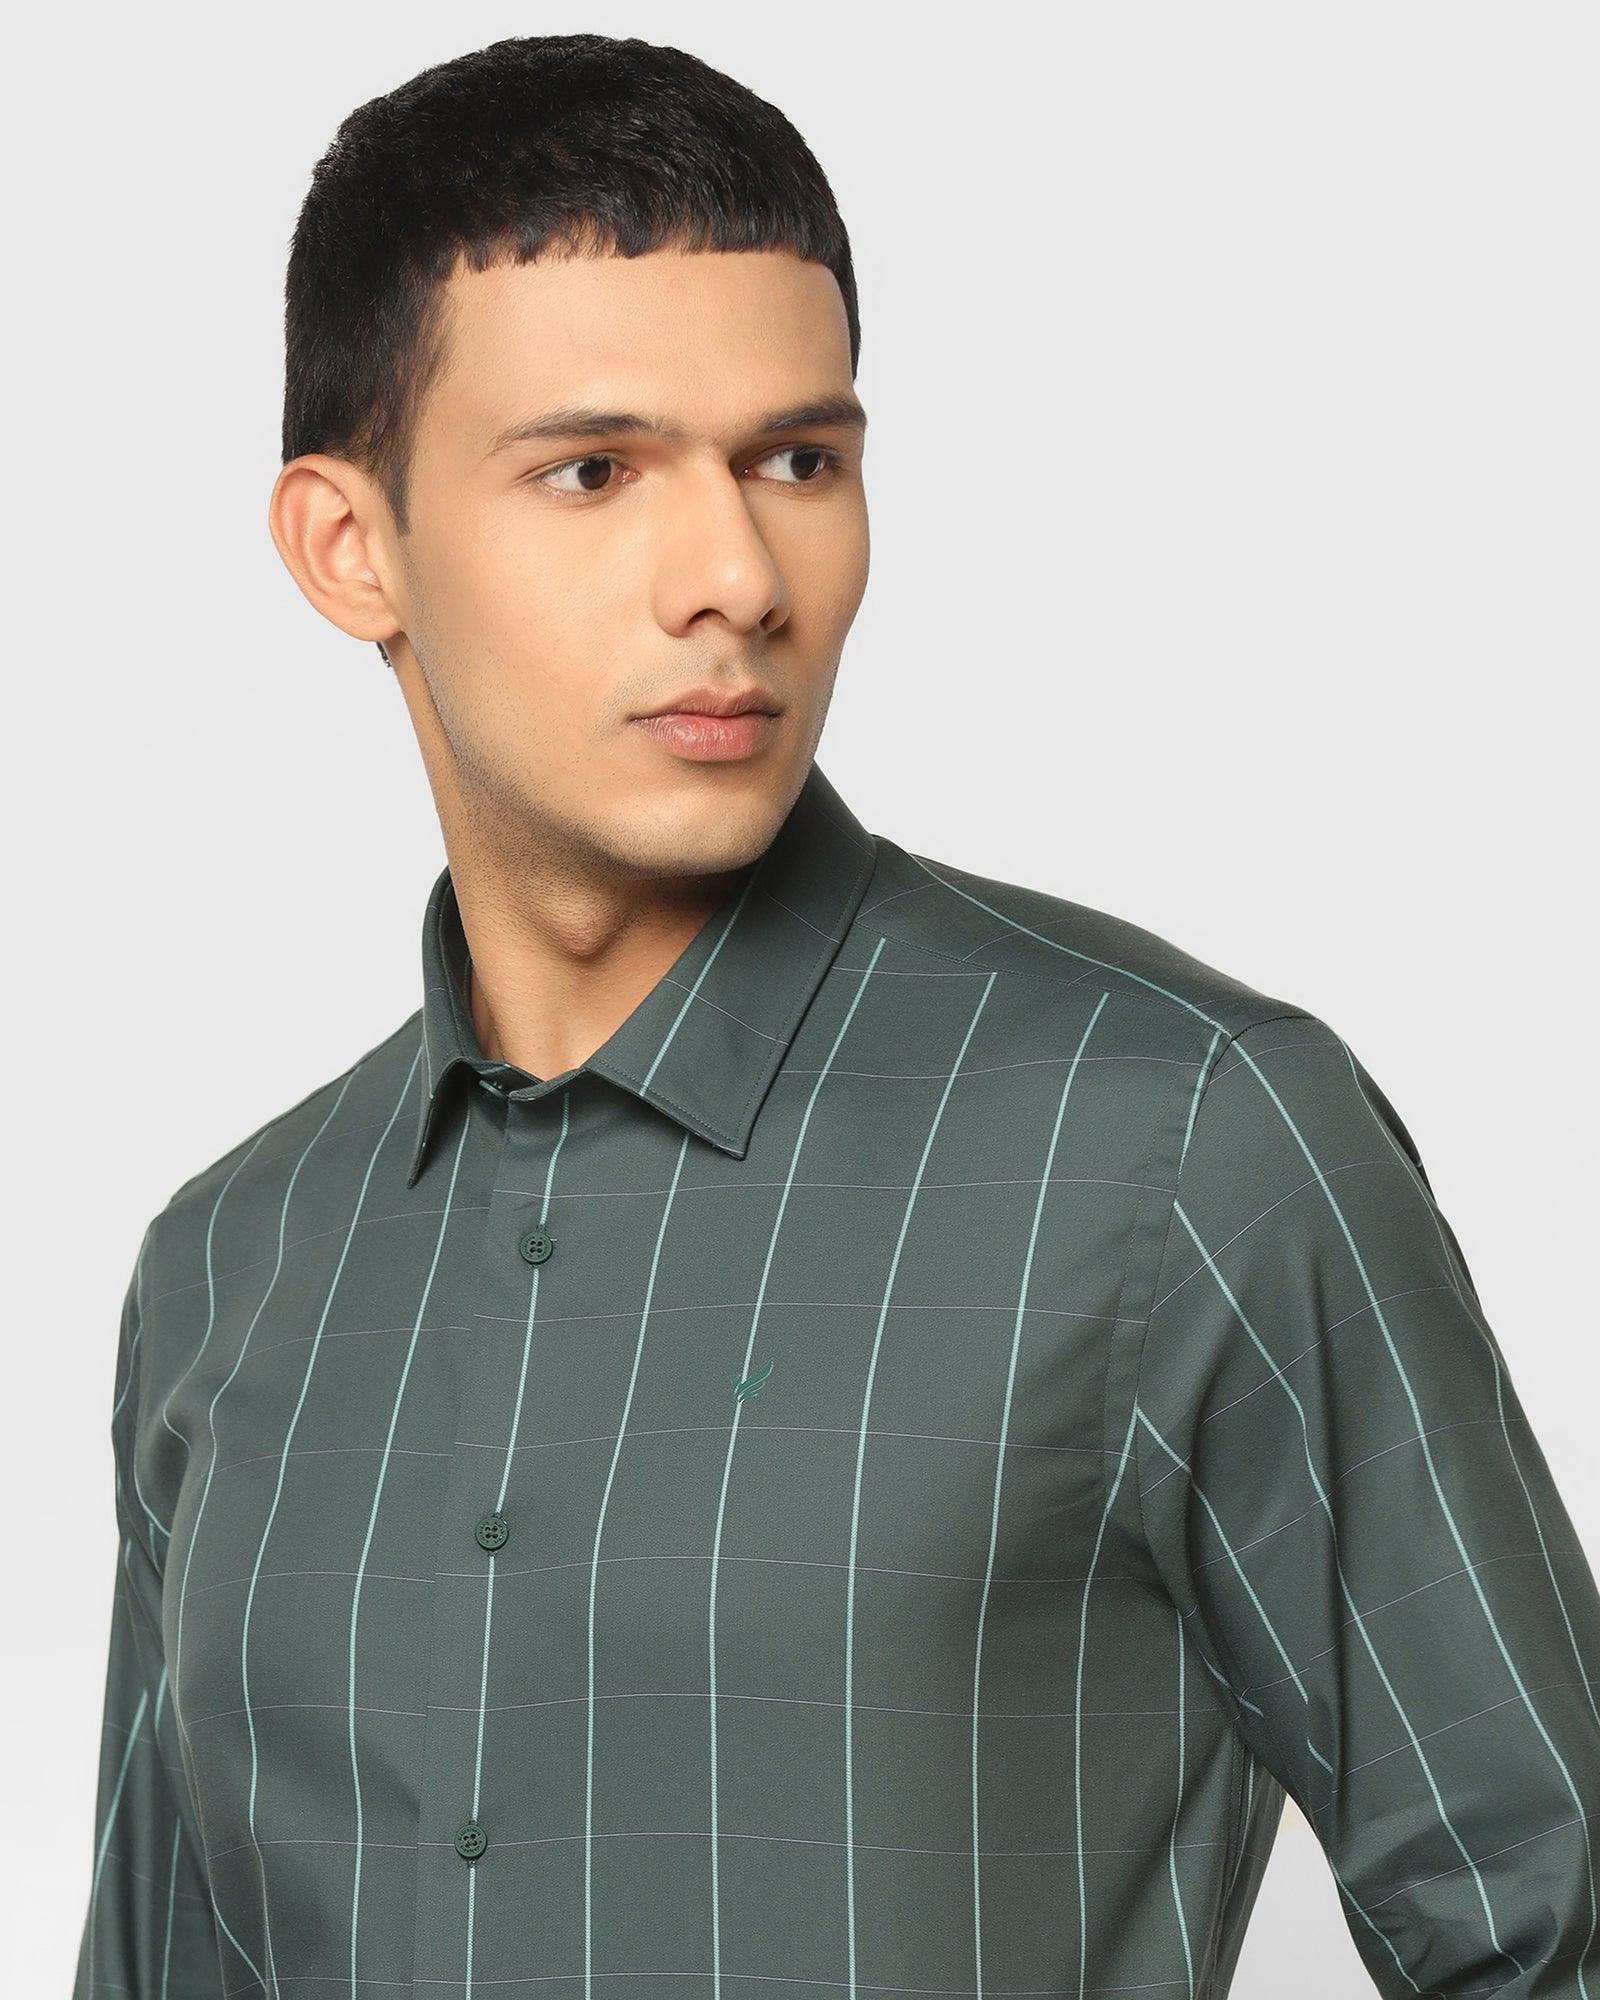 TechPro Formal Green Check Shirt - Digo